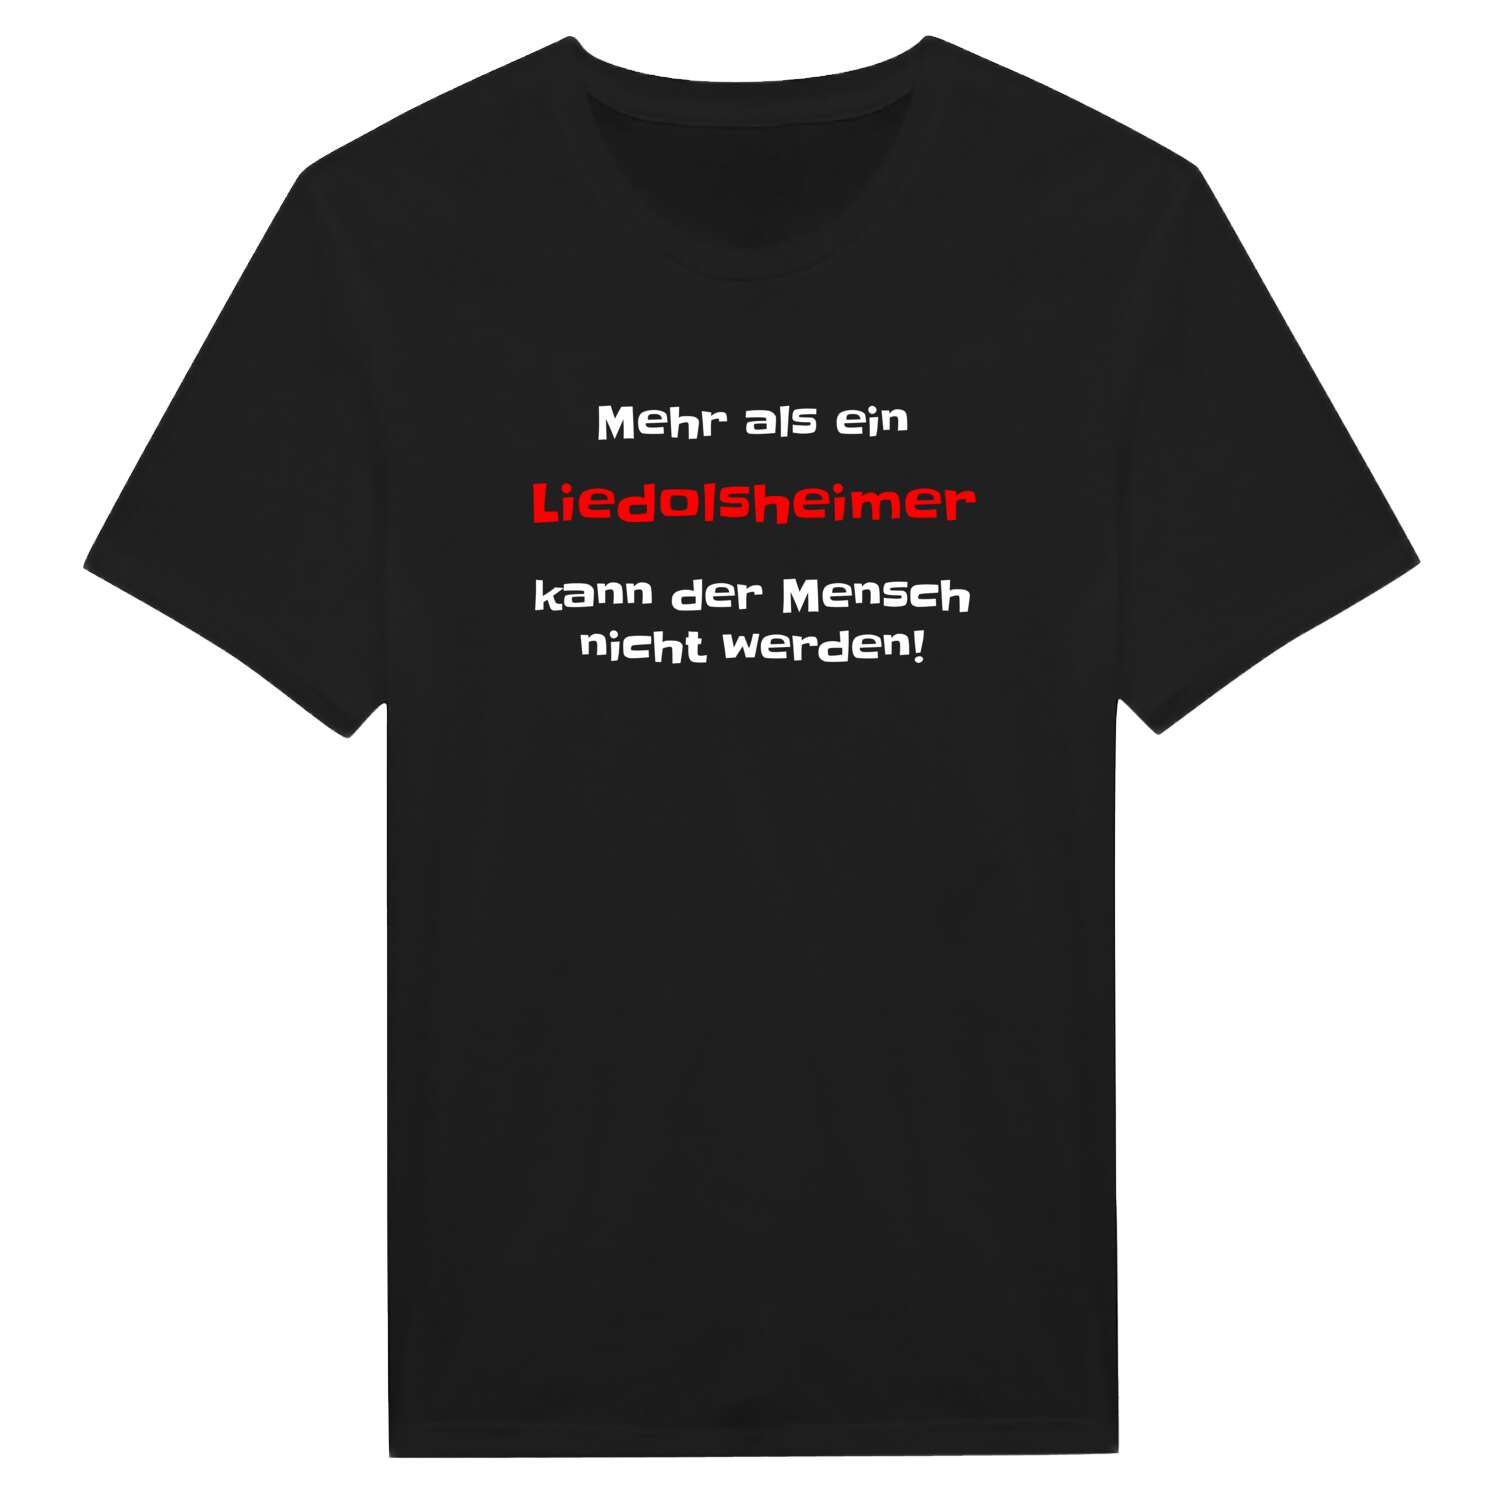 Liedolsheim T-Shirt »Mehr als ein«